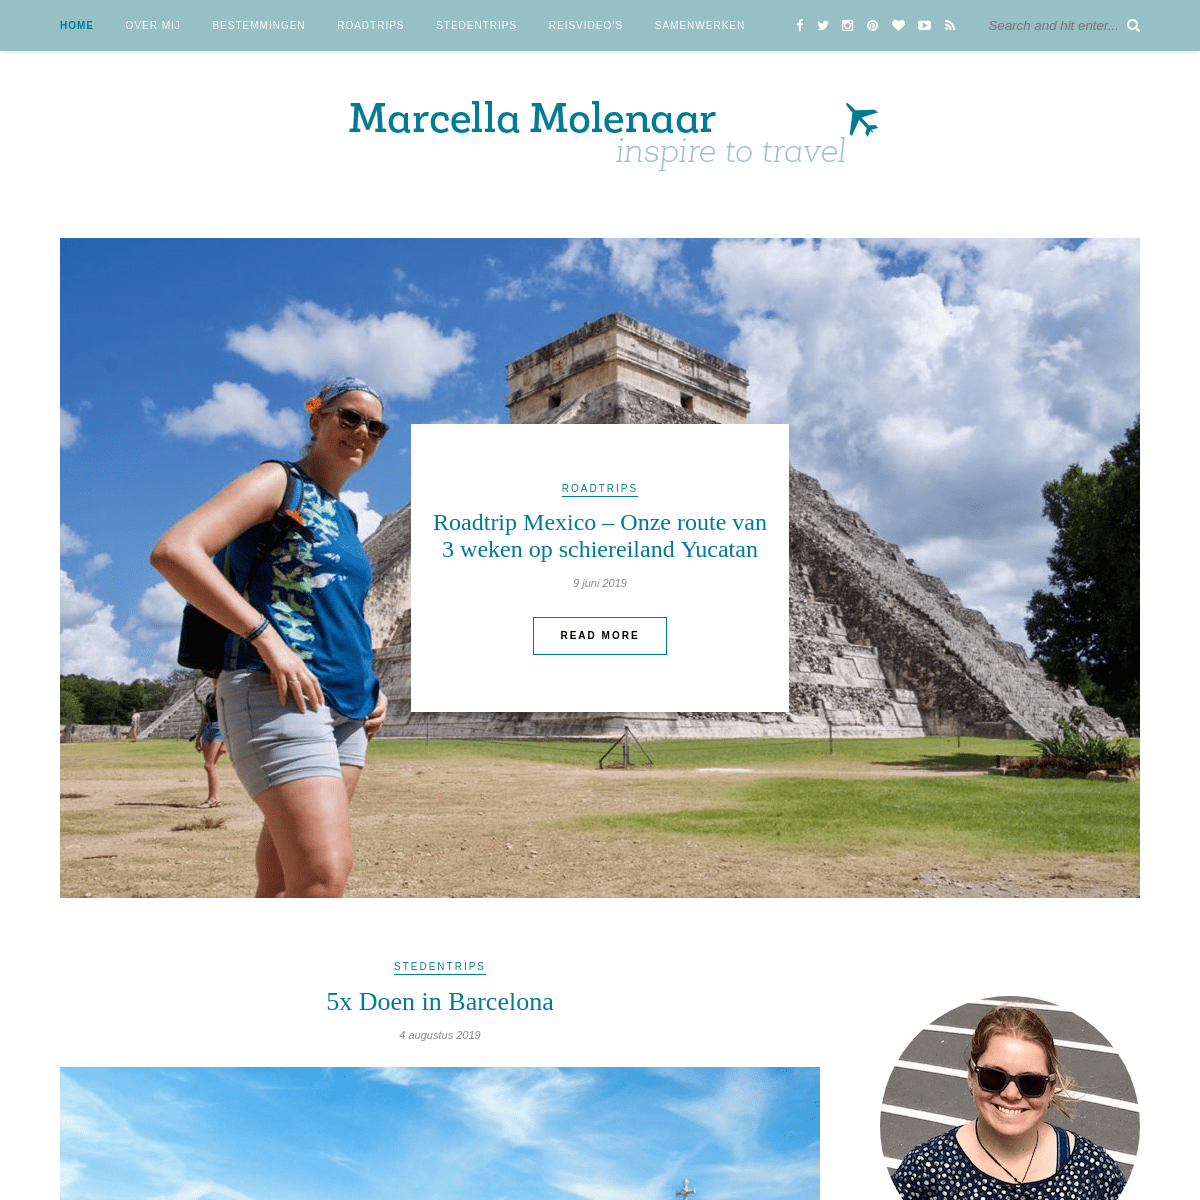 Marcella Molenaar - Inspire to Travel! - Ver weg of dichtbij huis; er is zoveel moois te ontdekken!